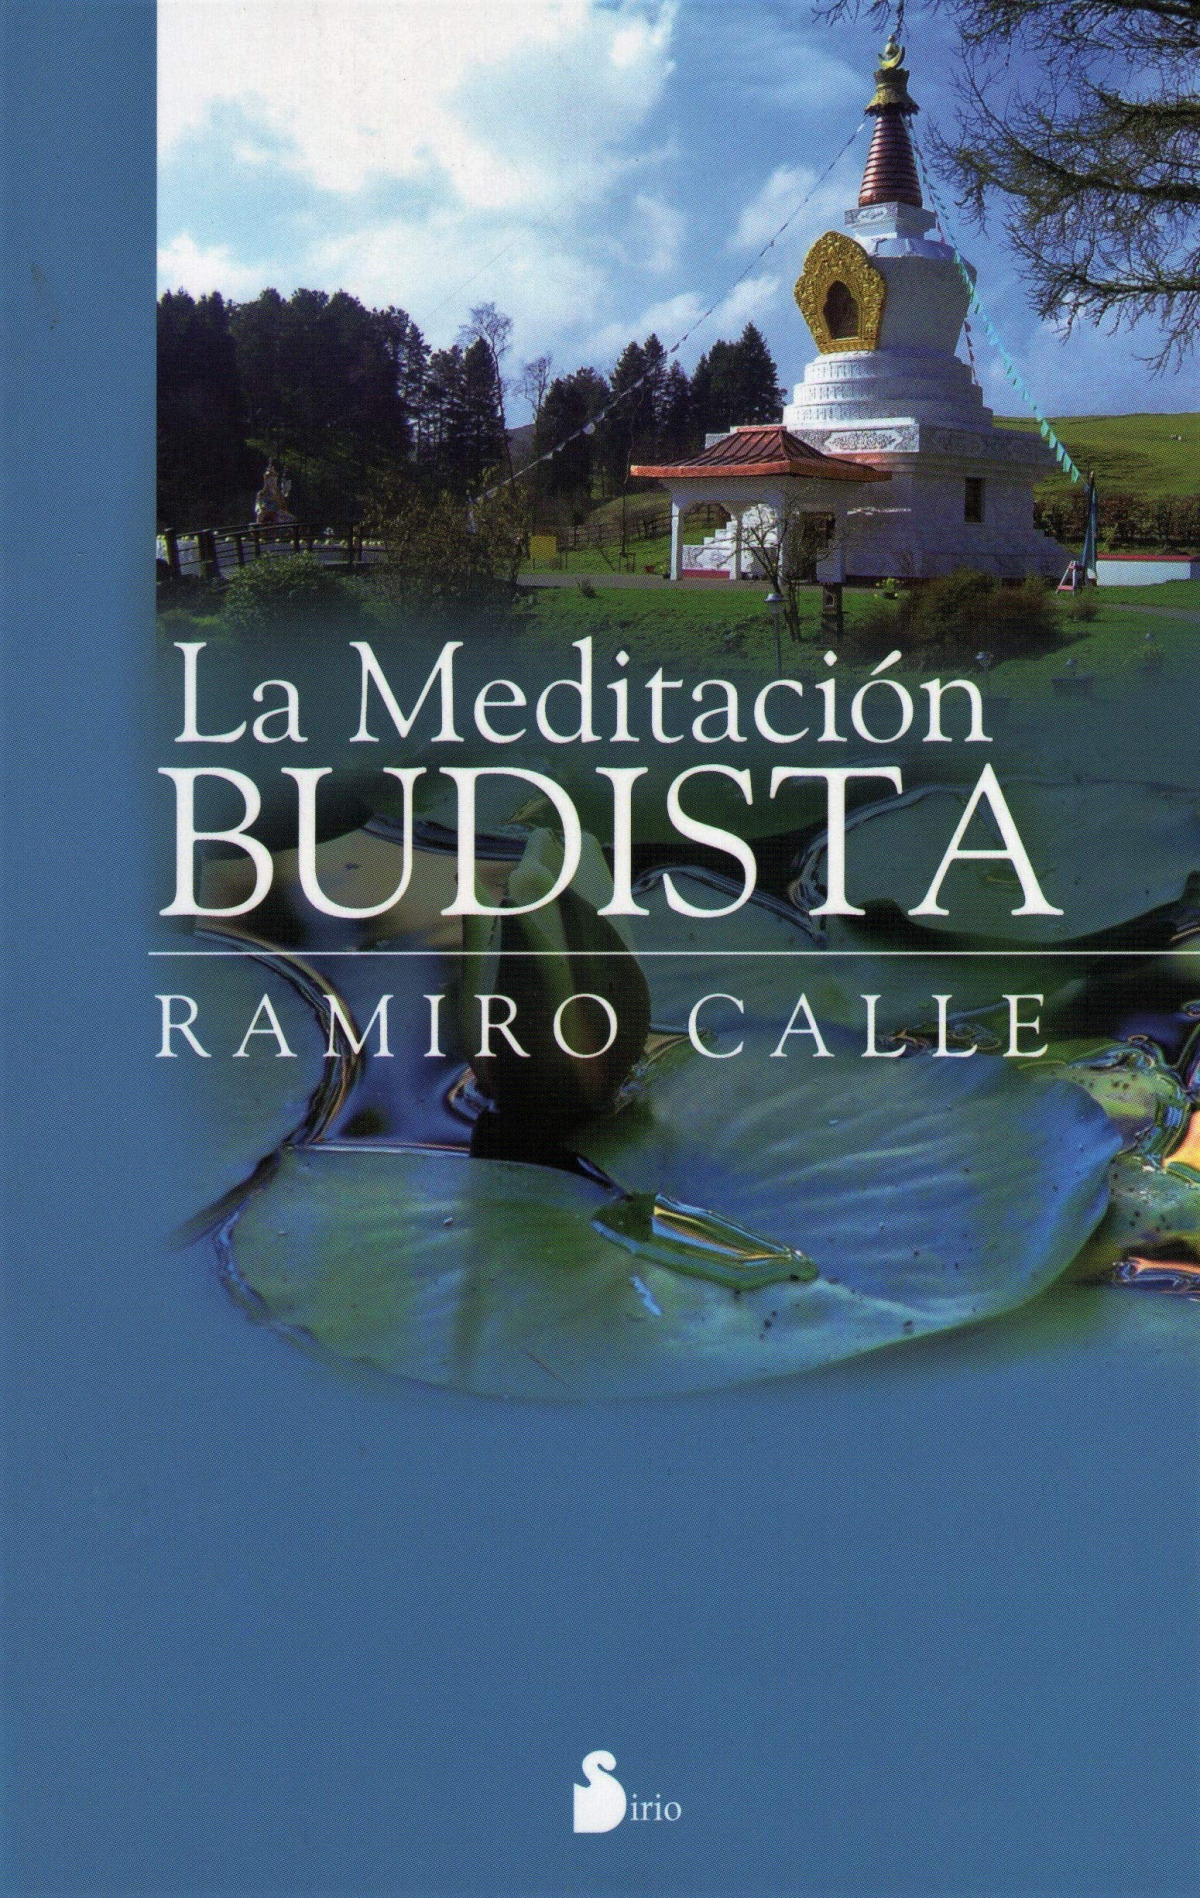 La meditacion budista